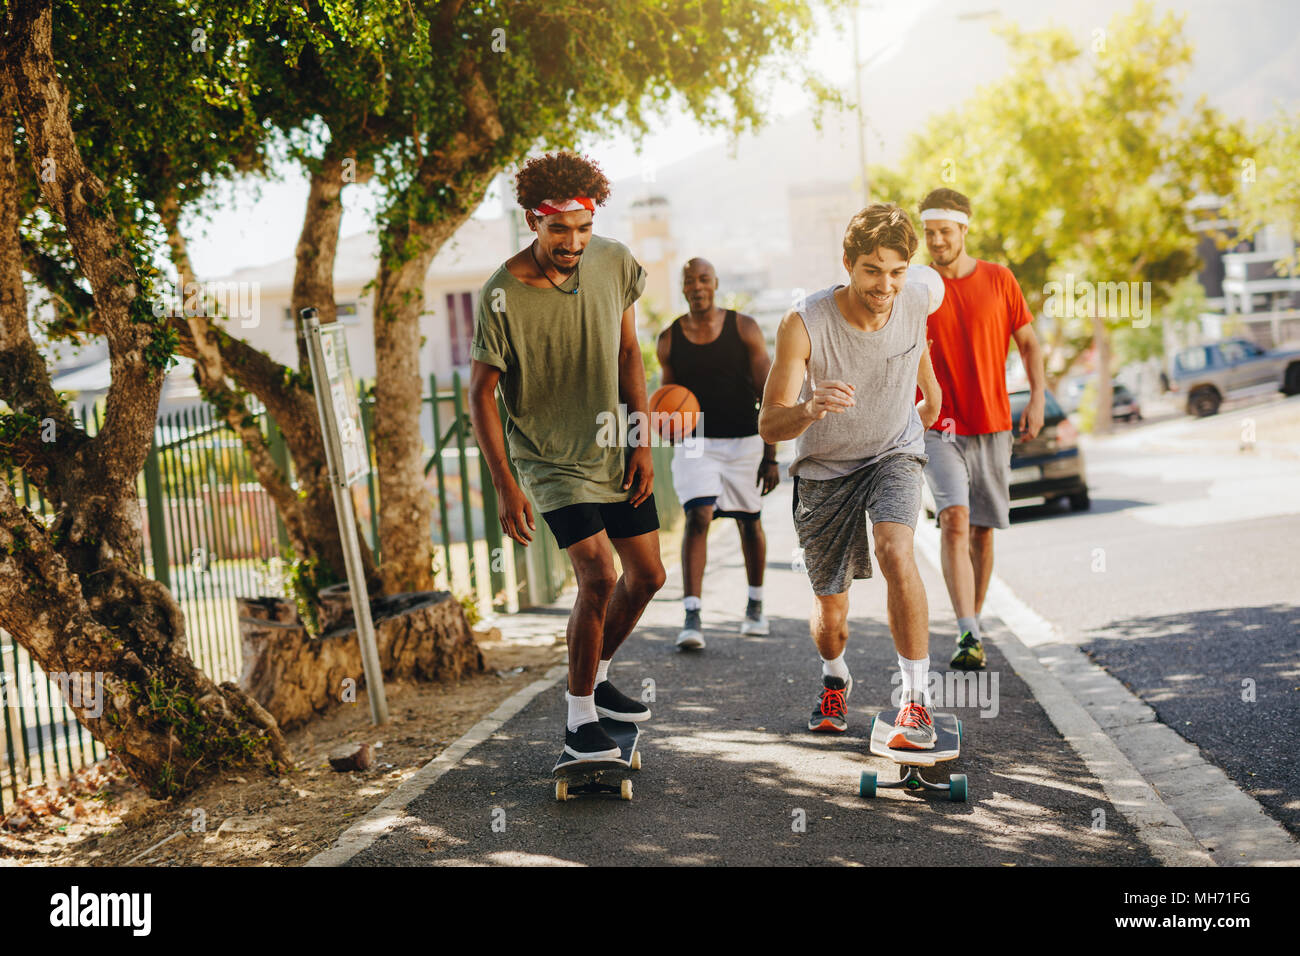 Zwei Männer Schlittschuhlaufen auf Skateboard auf einem Gehsteig, während ihre Gehilfen feuern Sie. Basketball Jungs gehen auf Asphalt mit skateboards. Stockfoto